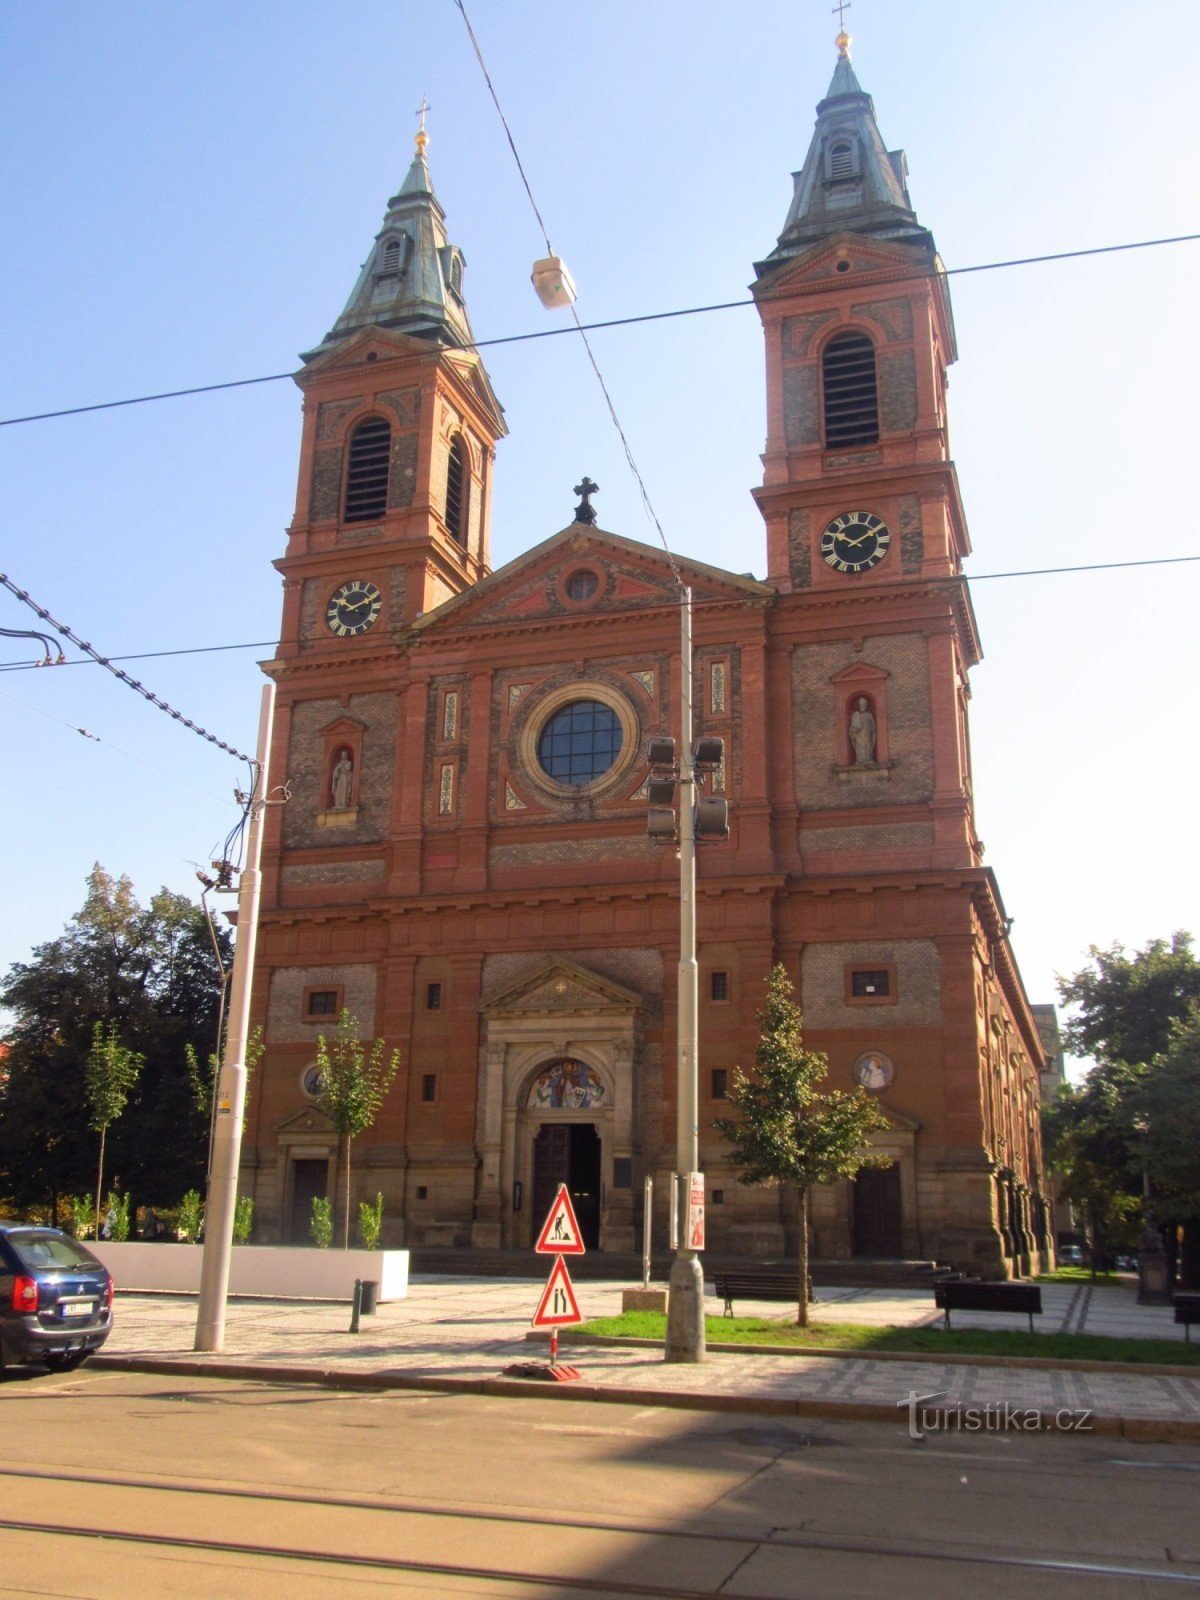 聖教会14 月 XNUMX 日、プラハのスミーホフにあるヴァーツラフ広場